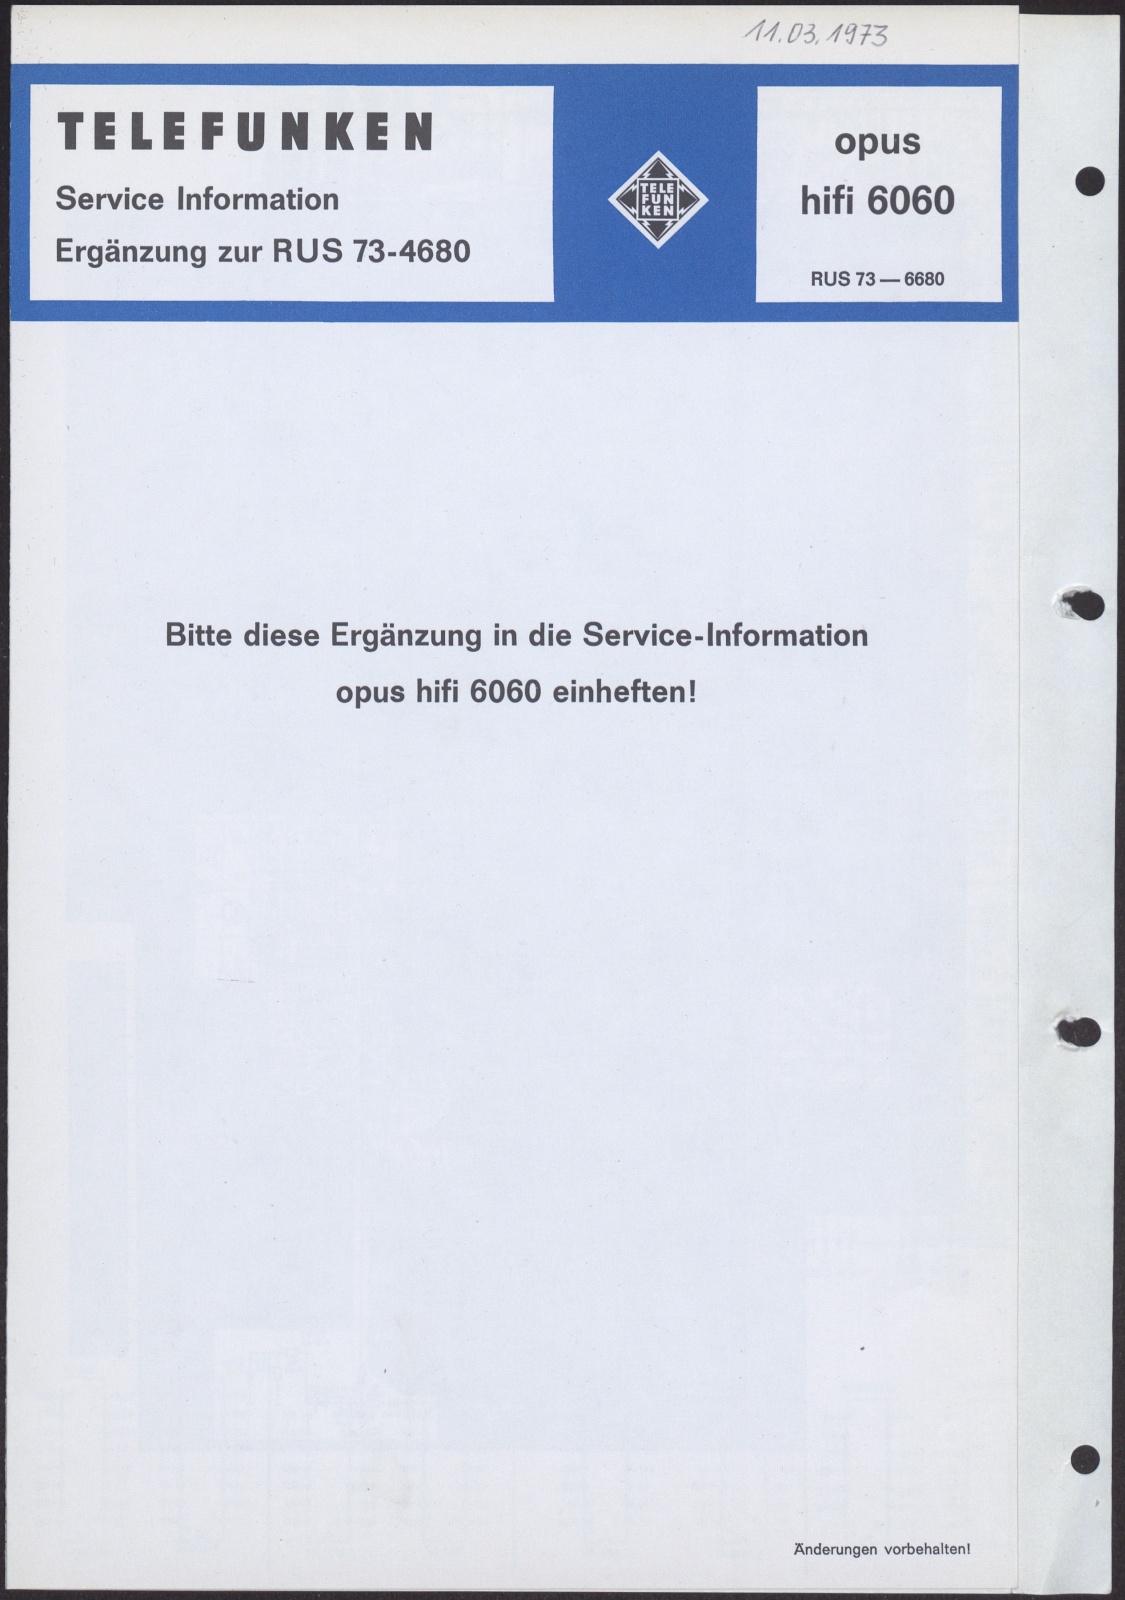 Bedienungsanleitung: Telefunken Service Information opus hifi 6060 RUS 73 - 4680; Telefunken Service Information Ergänzung zur RUS 73 - 4680 (Stiftung Deutsches Technikmuseum Berlin CC0)